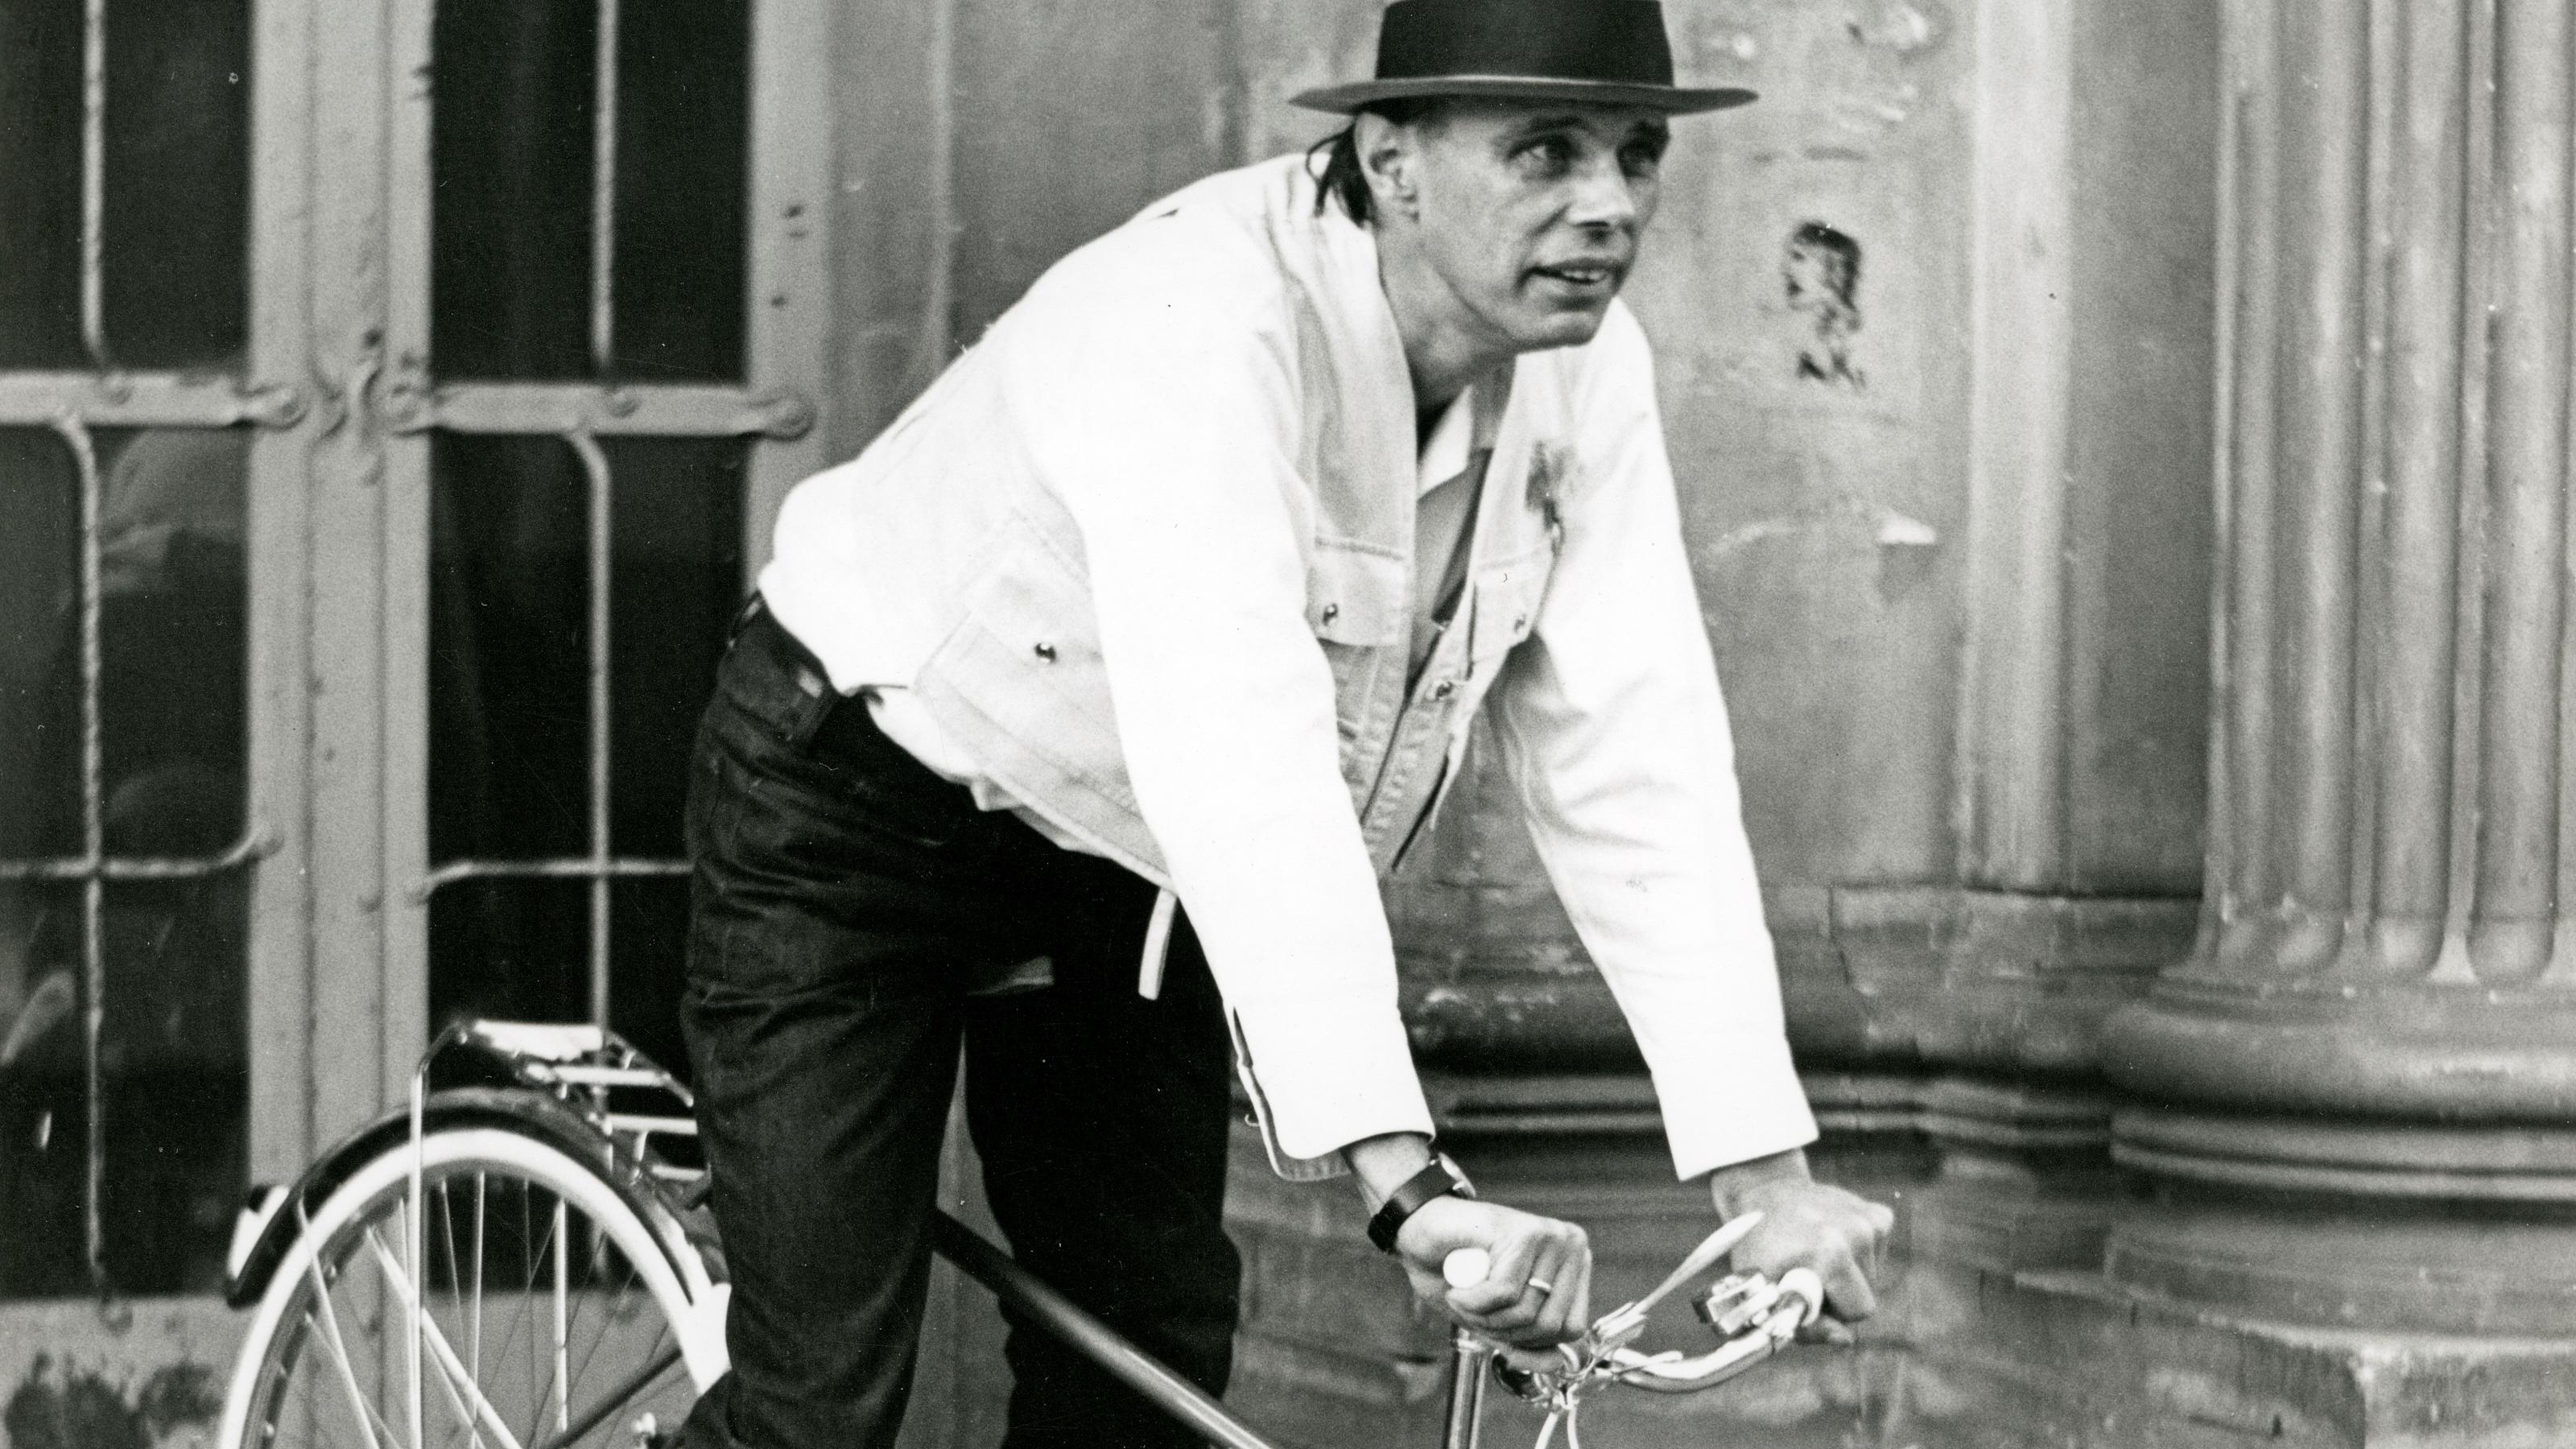 Beuys fährt ii Mountainbike-Stil, gekleidet mit weißem Hemd und dunkler Hose, drei flache Steinstufen hinunter.